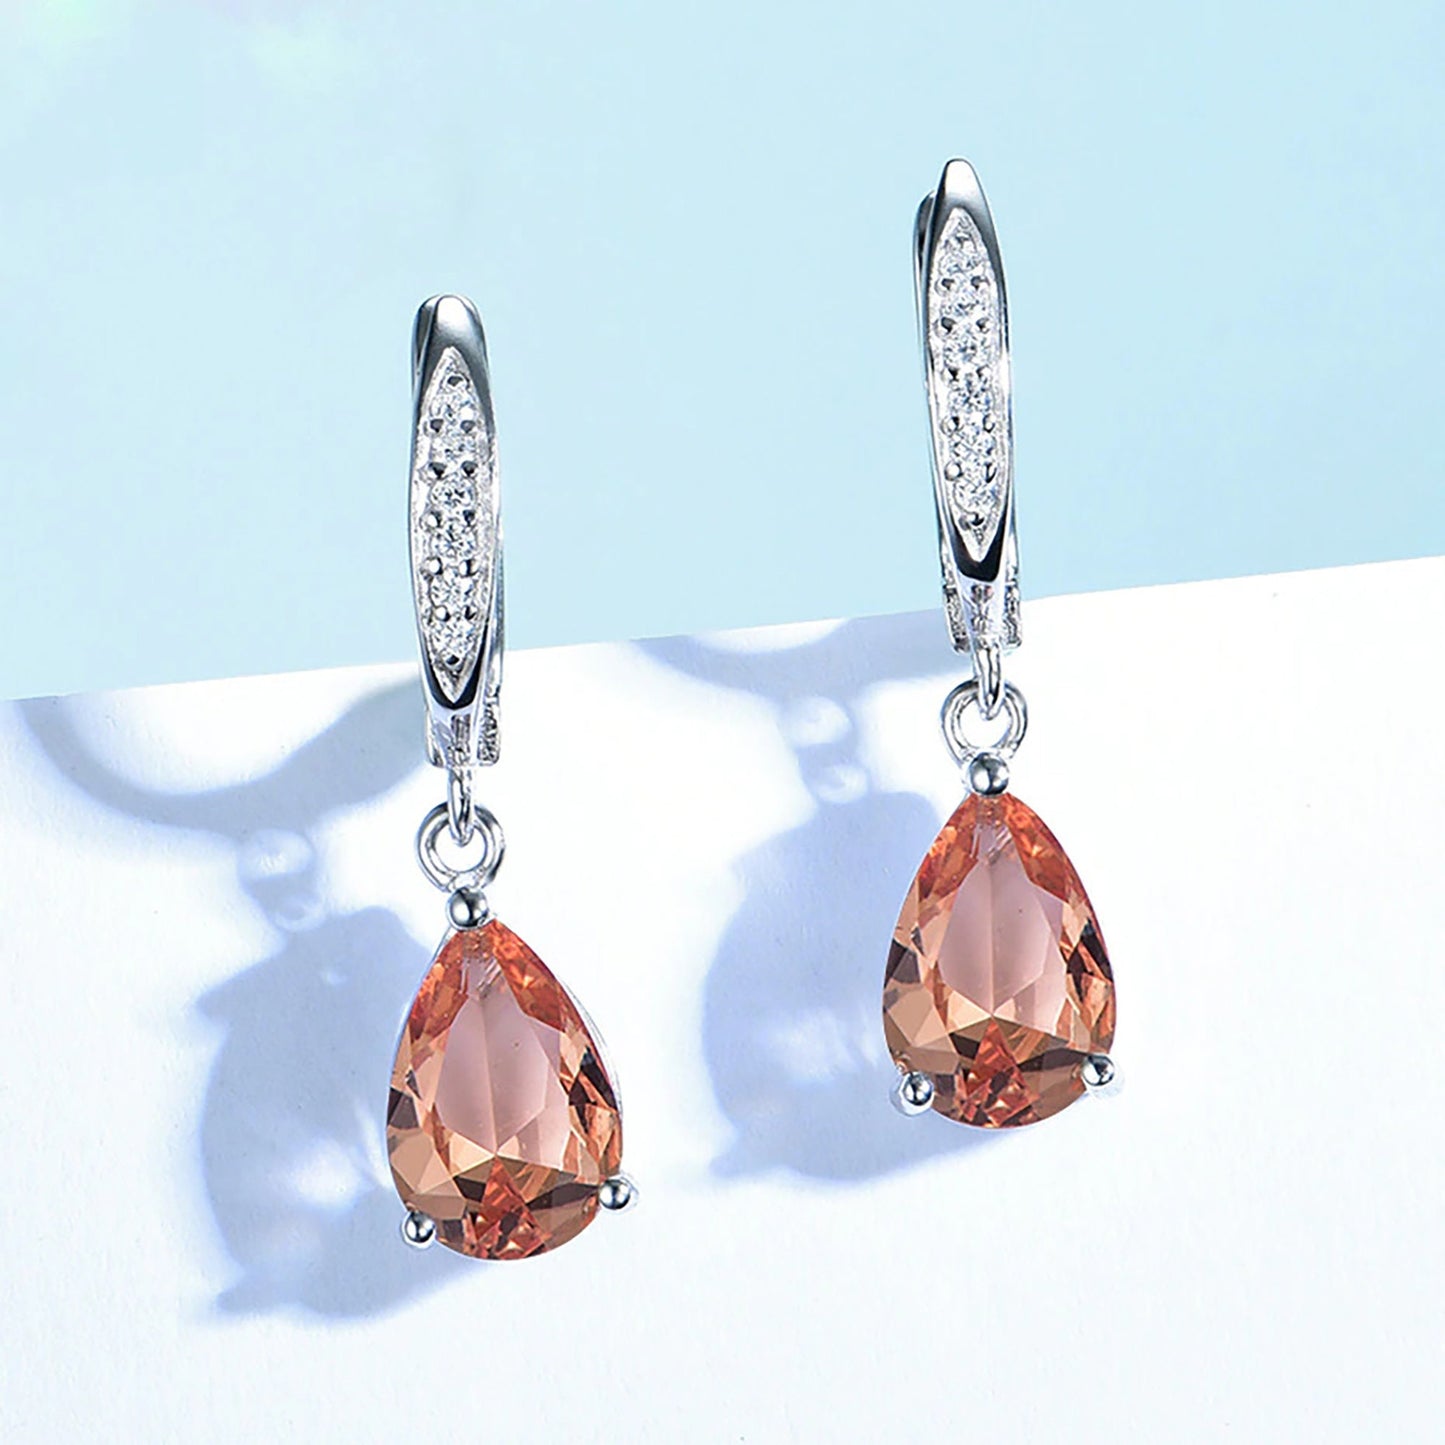 Diaspore Gemstone Earrings, Zultanite Earrings, Solid 925 Sterling Silver, Color Change Crystal Earrings, Rhodium Plating